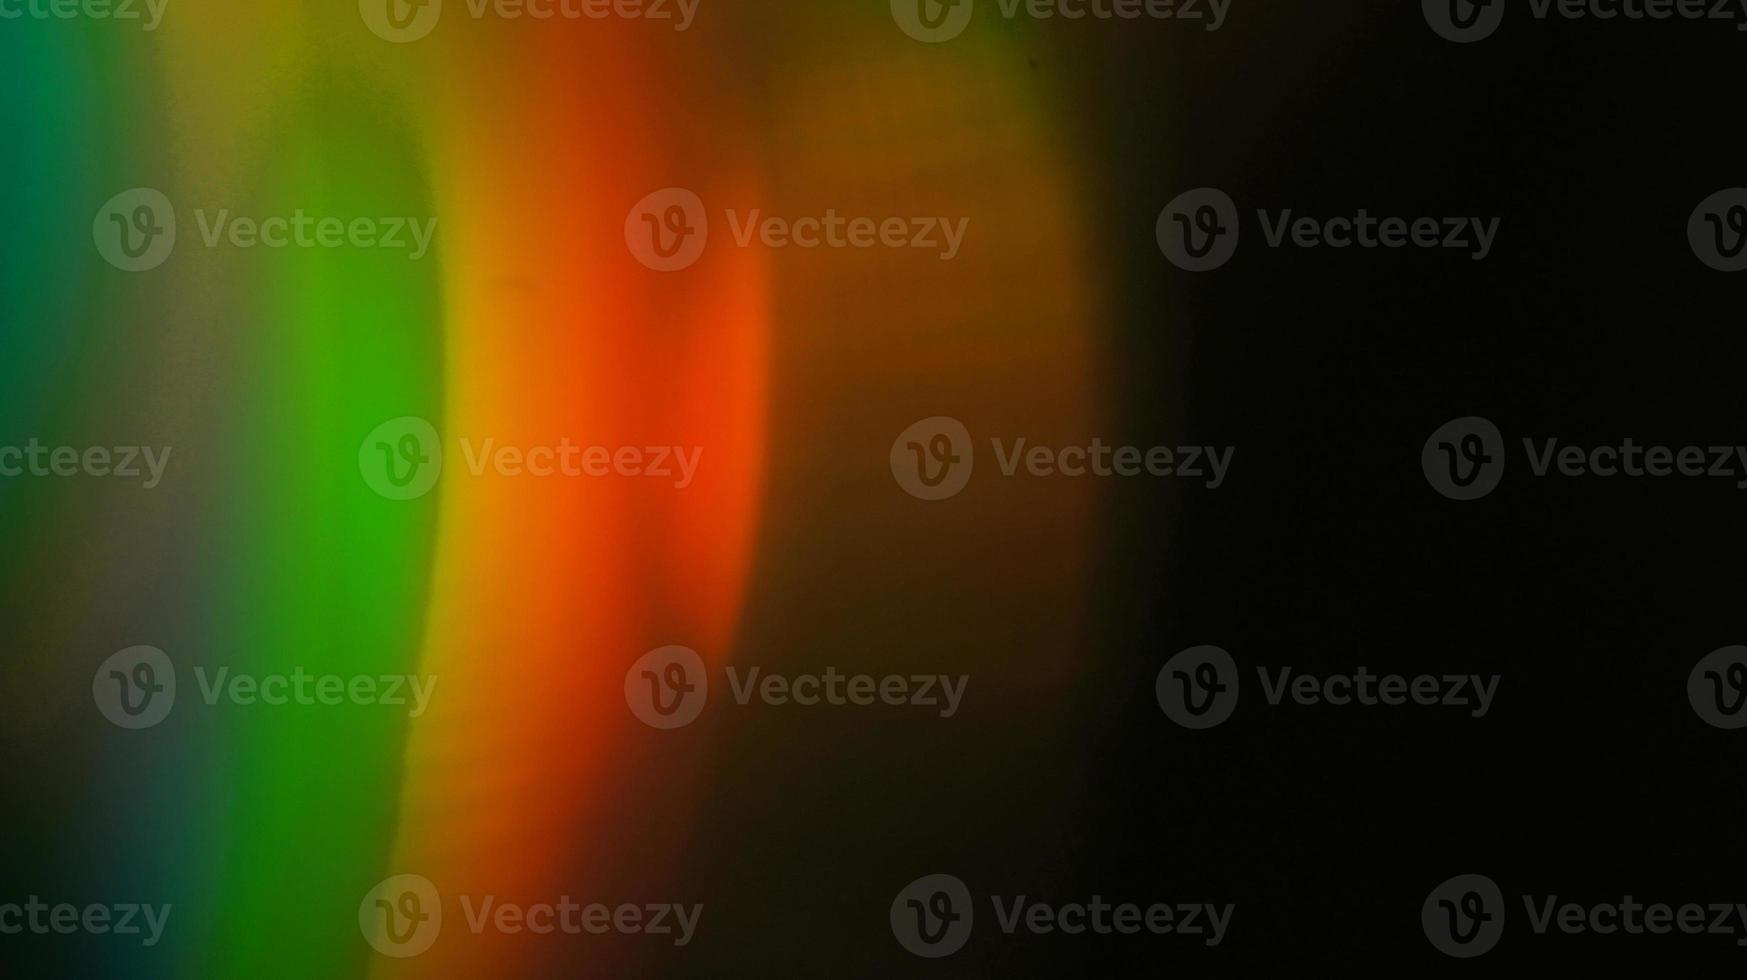 luz do arco-íris sobreposição de refração textura diagonal holográfica natural no preto. foto